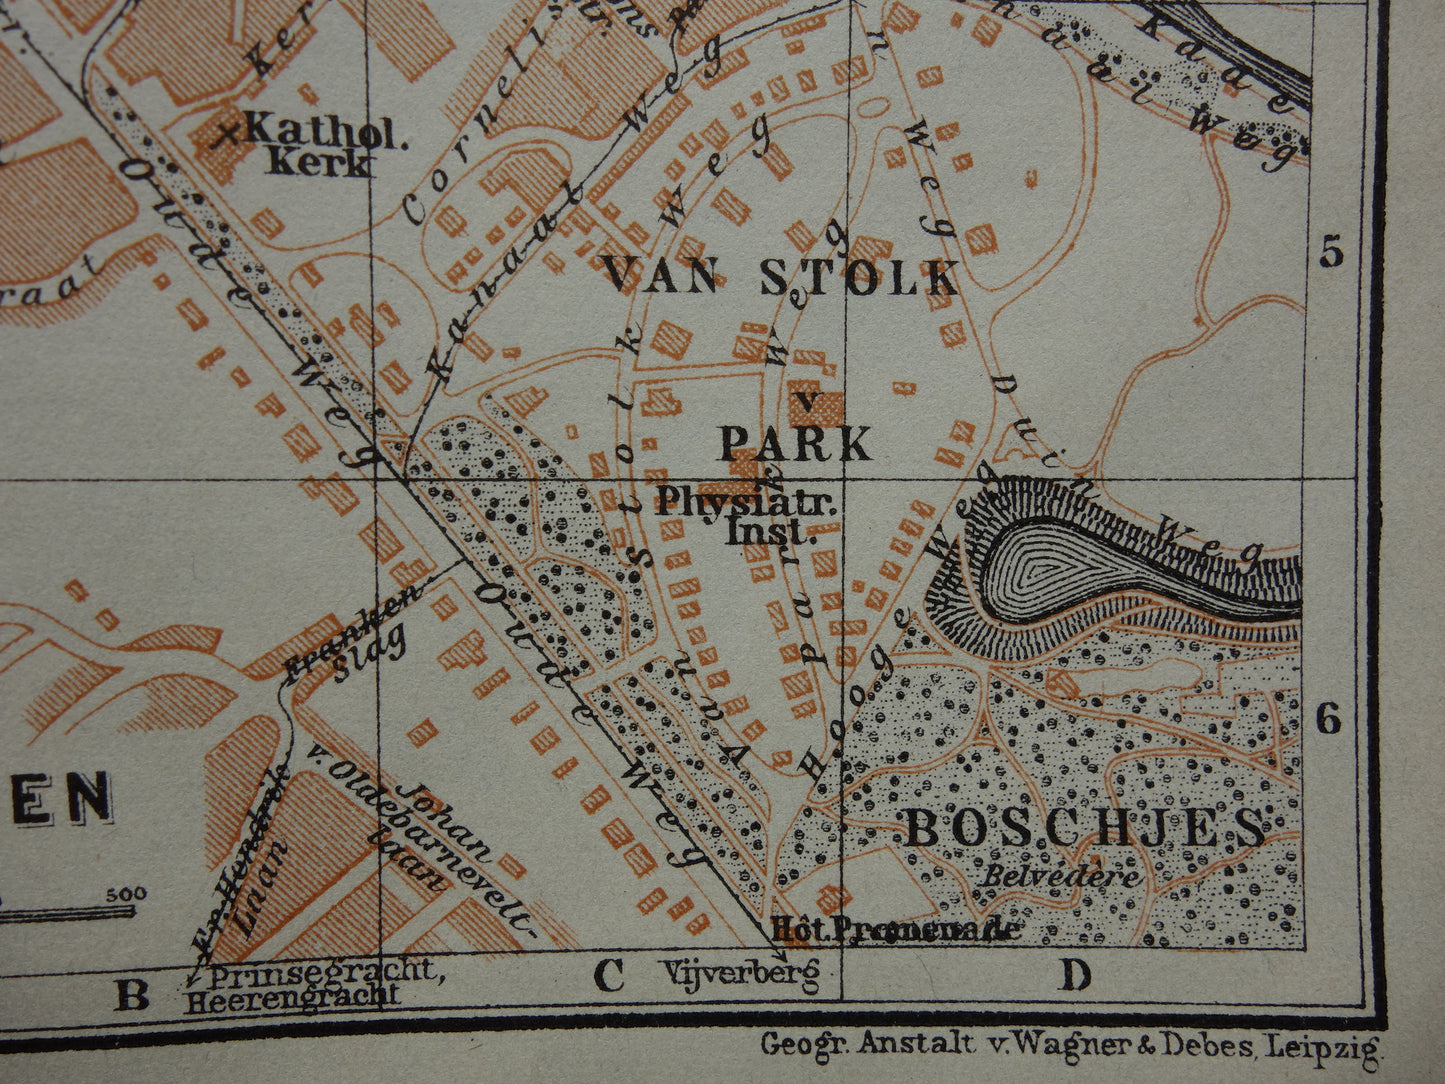 SCHEVENINGEN oude plattegrond van Scheveningen uit 1914 kleine originele antieke kaart Nederland